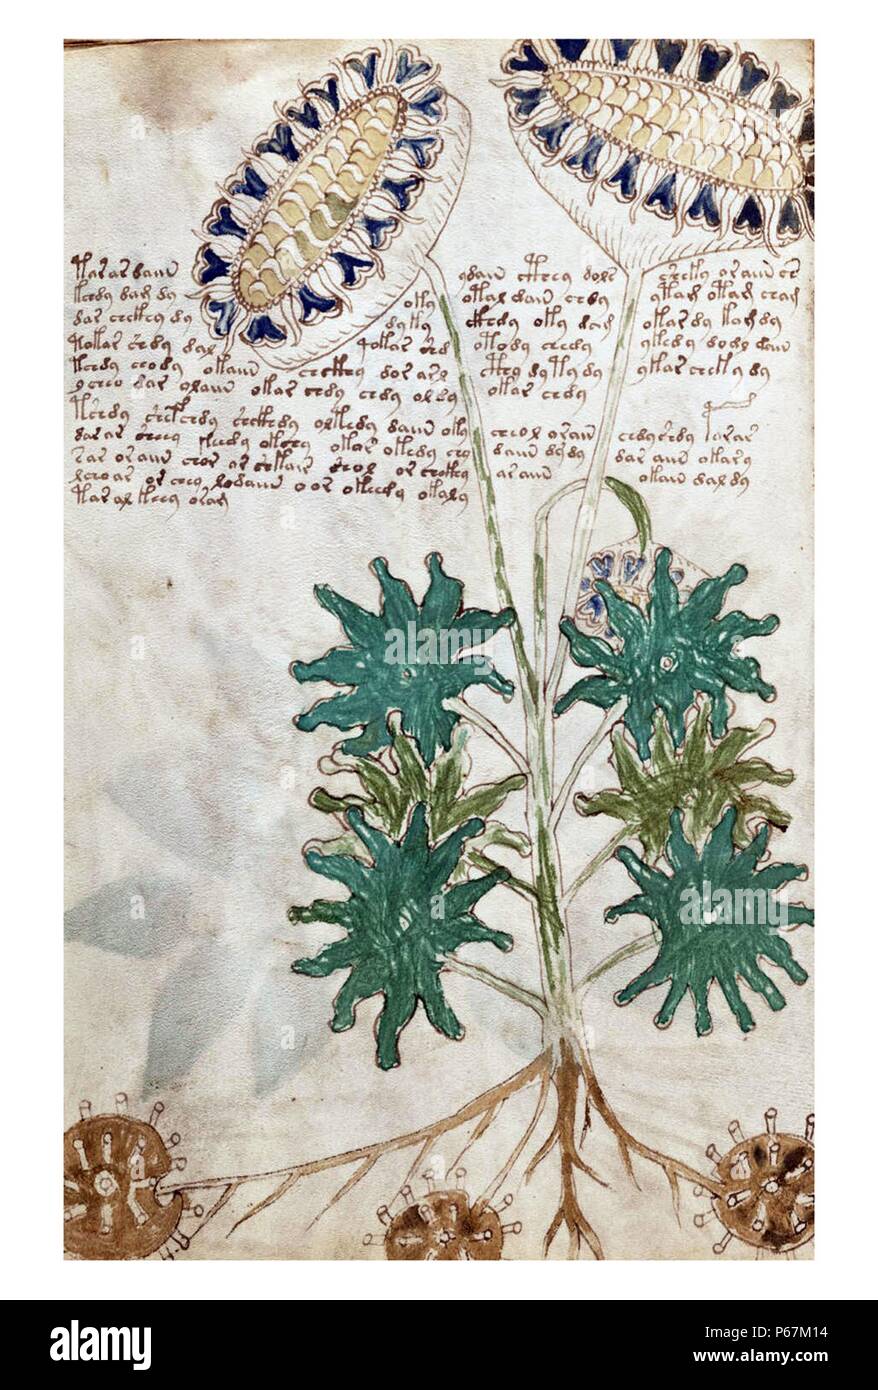 Das Voynich-Manuskript gilt als von den Gelehrten interessantesten und geheimnisvolle Dokument jemals gefunden. Vom 16. Jahrhundert Stockfoto